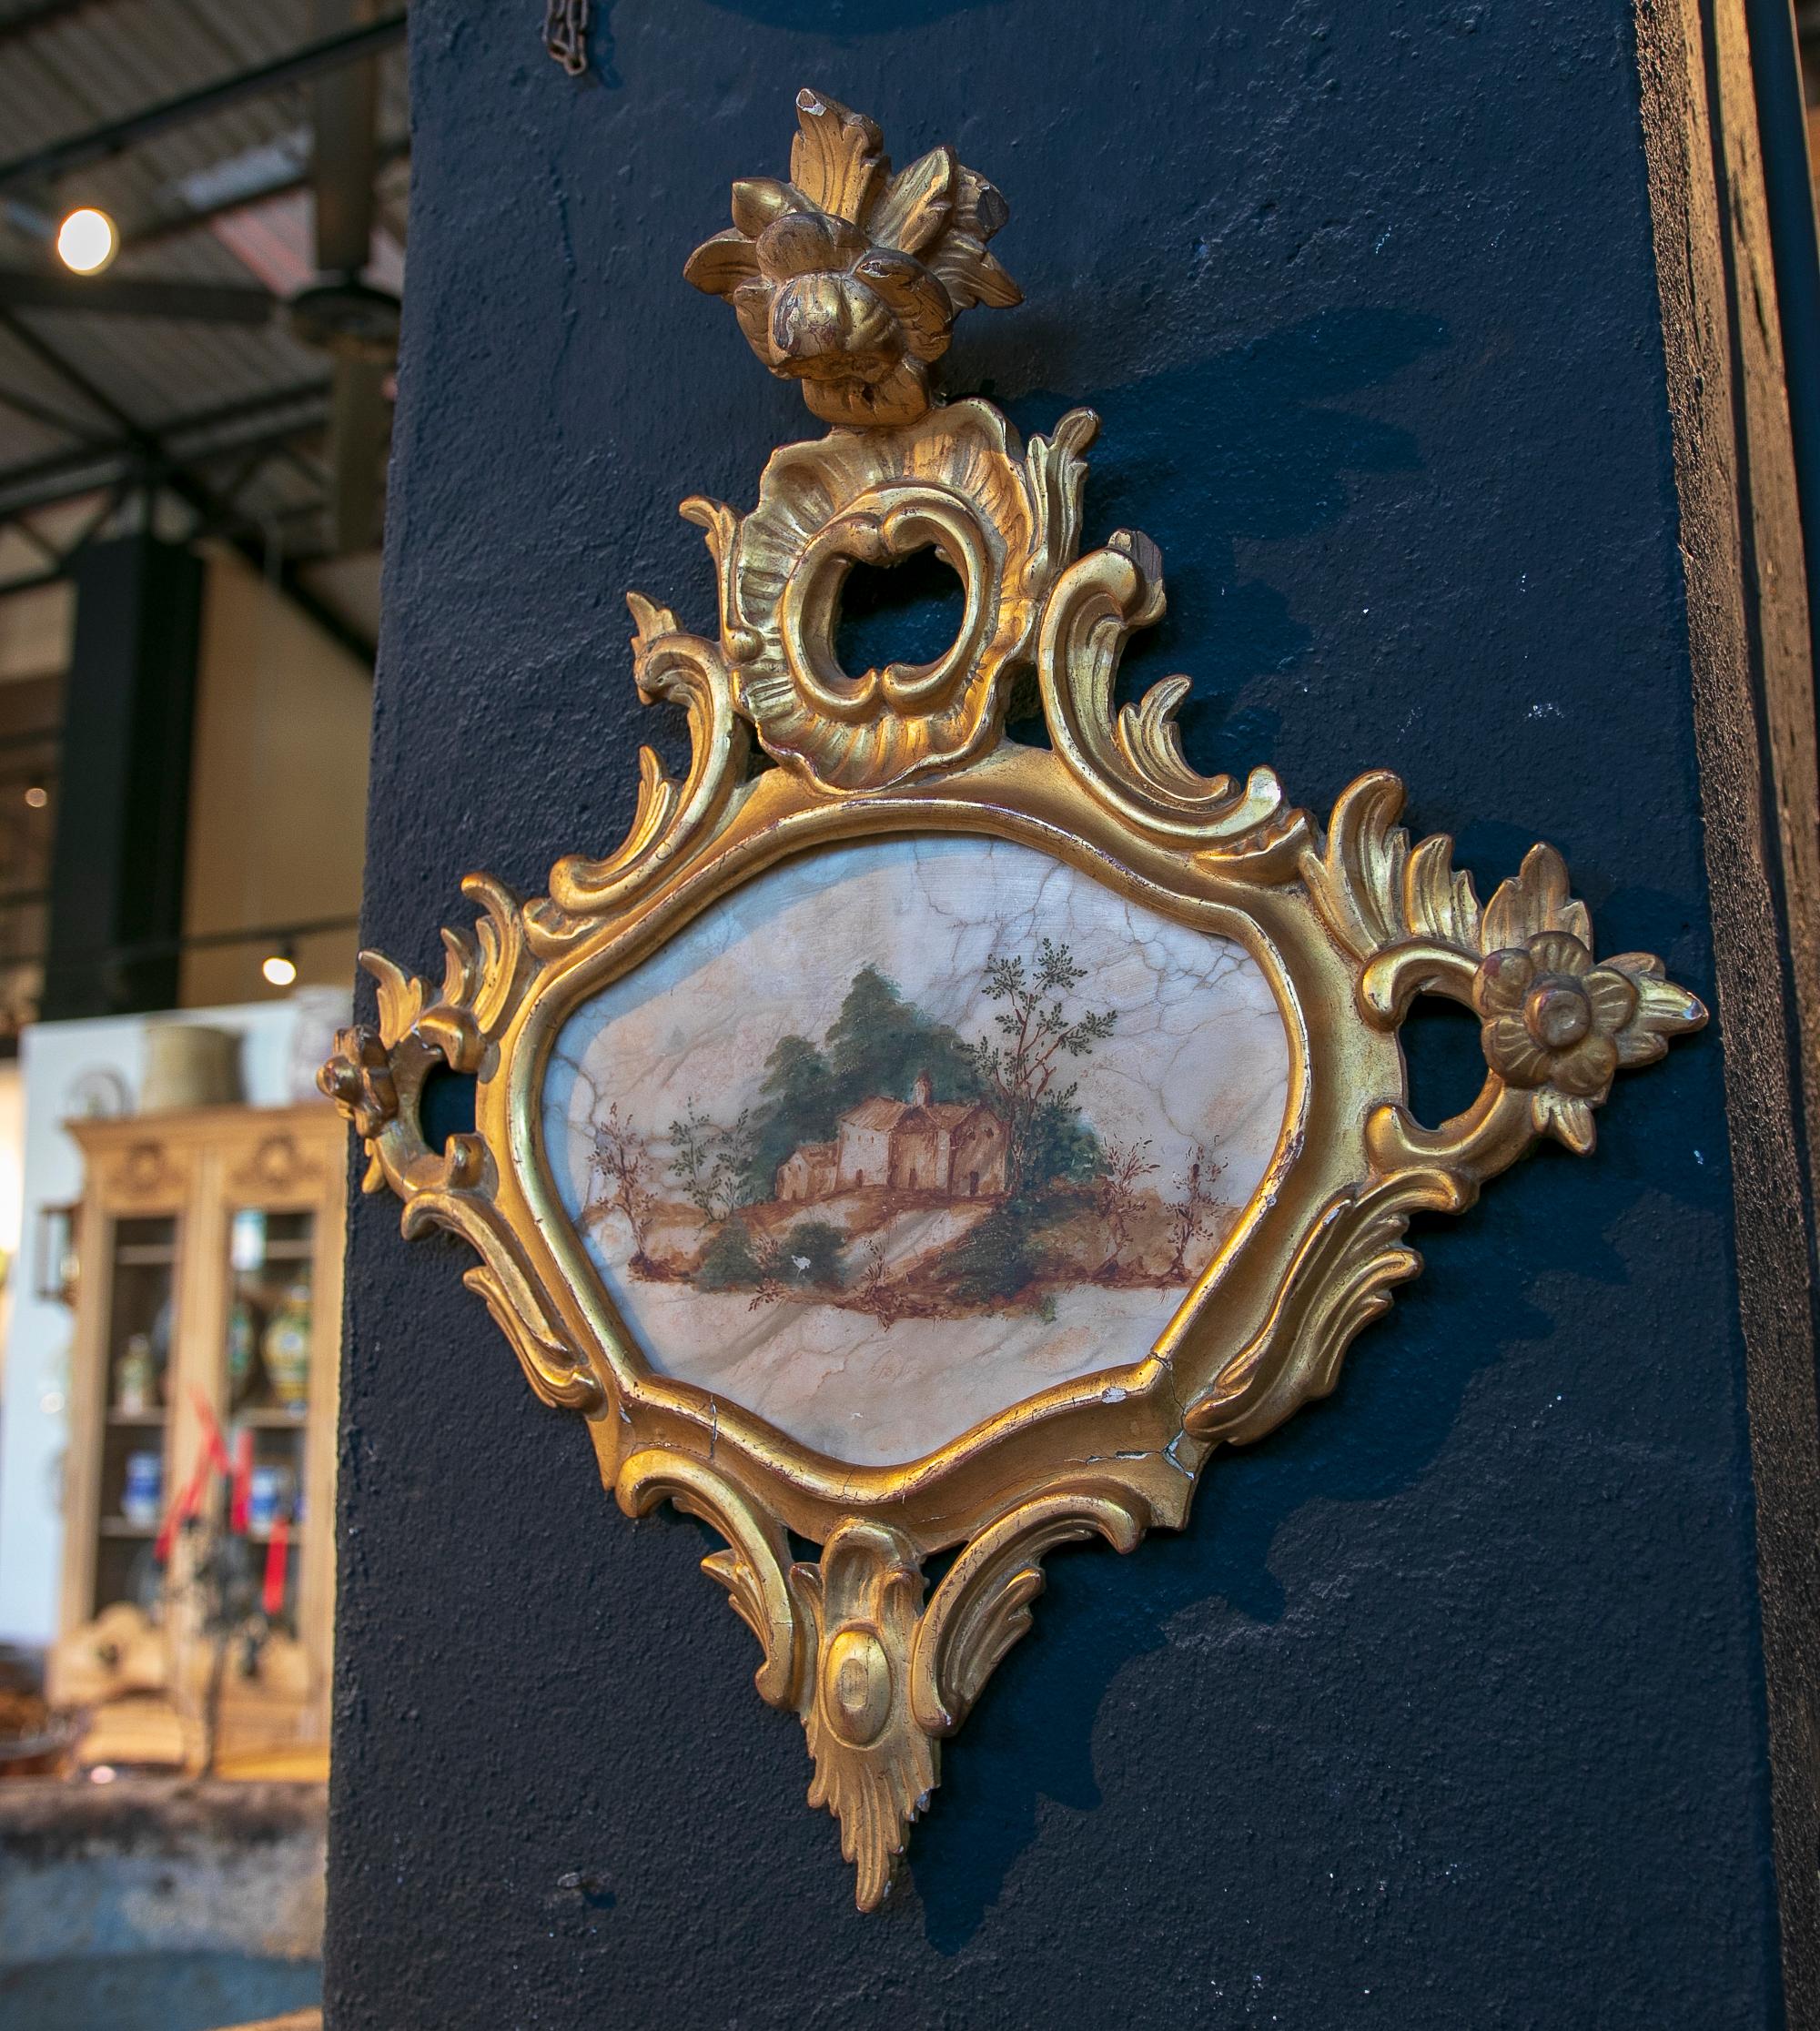 Tableau de paysage italien du XVIIIe siècle peint à la main sur albâtre et encadré.